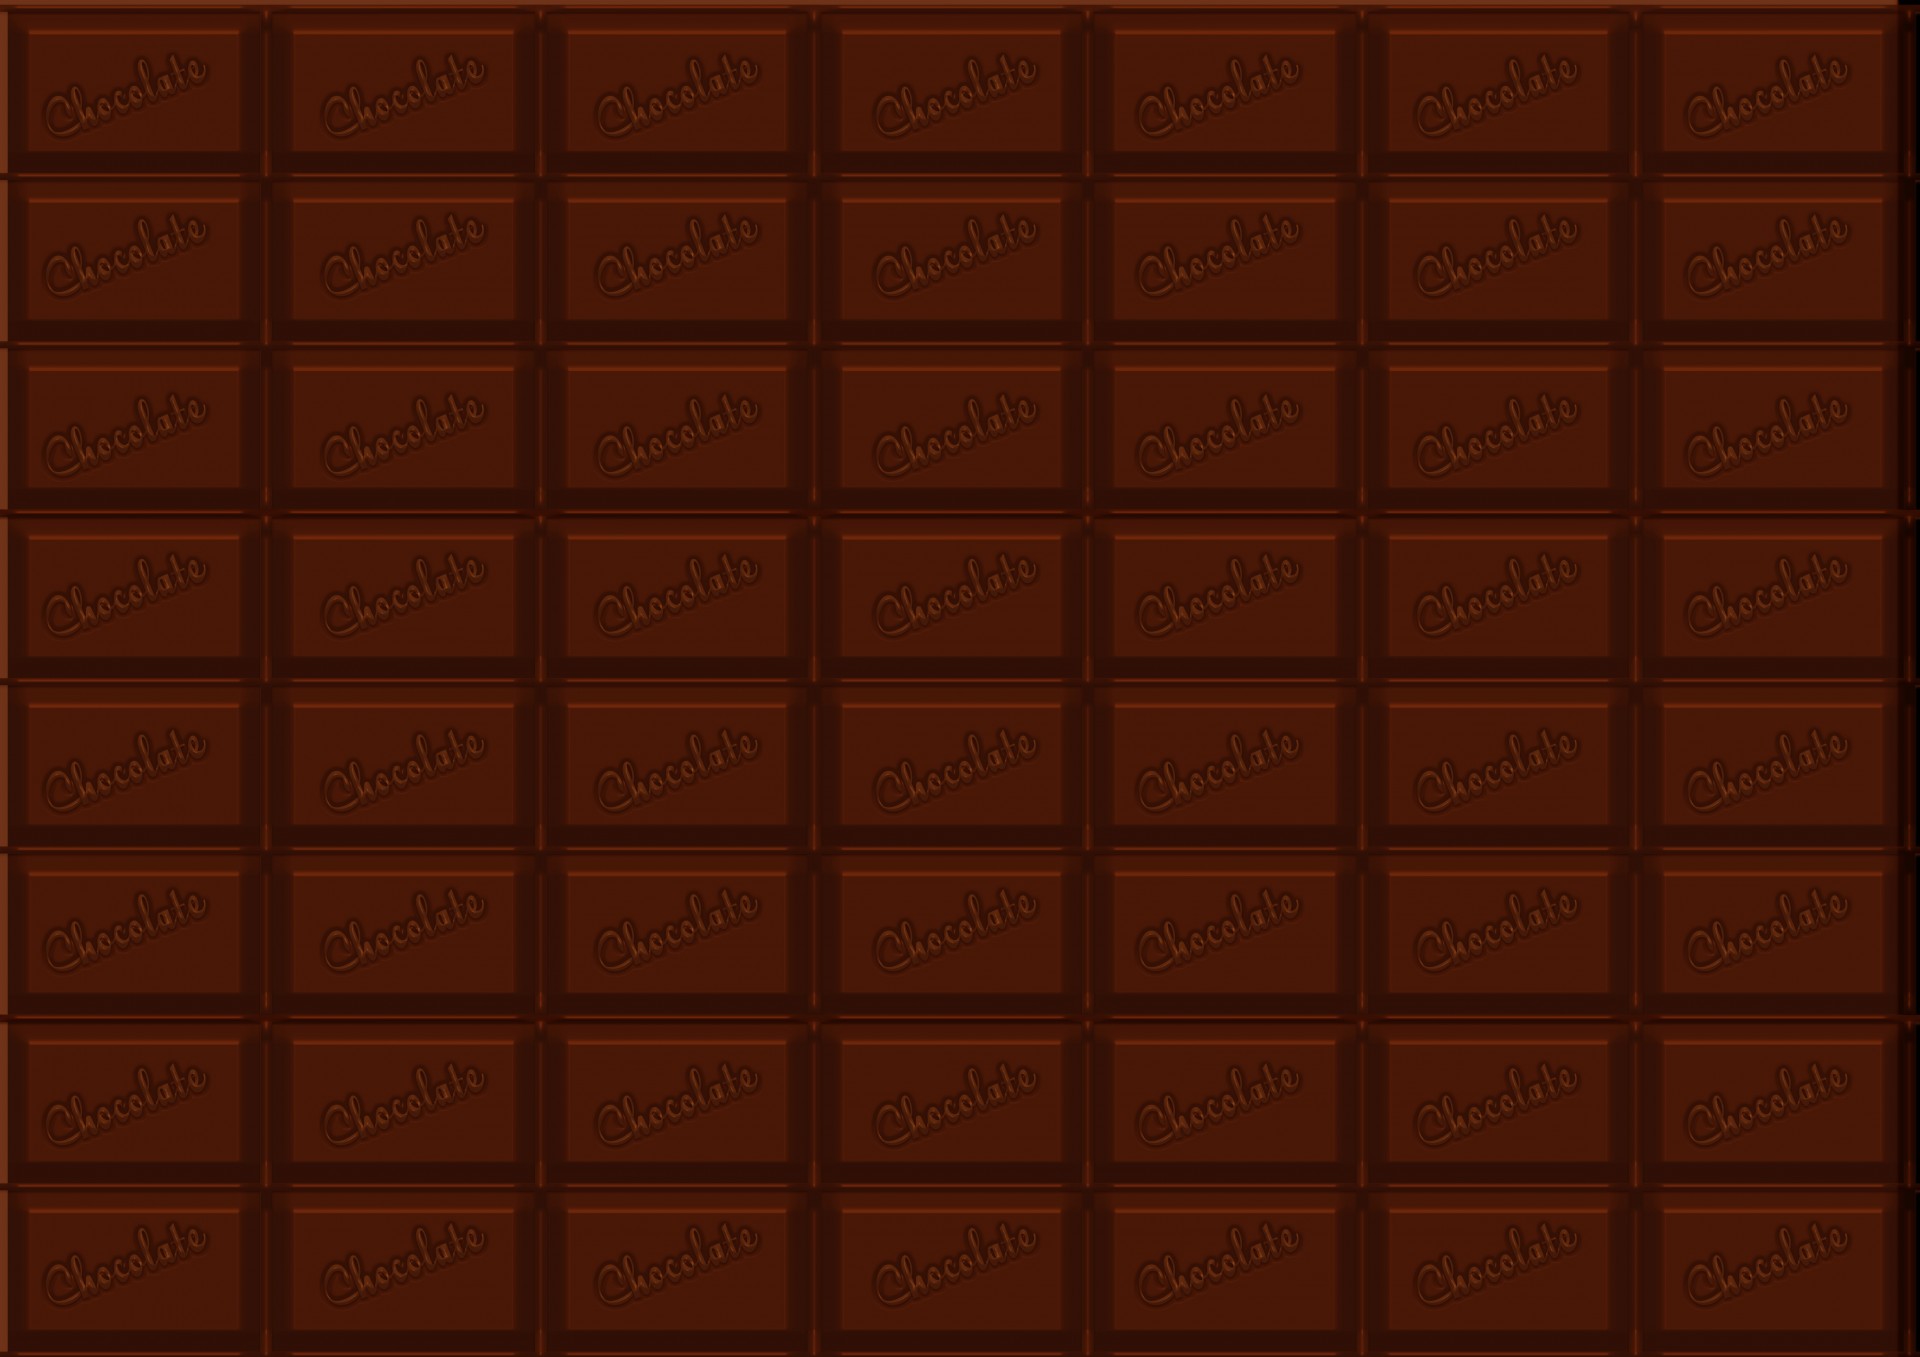 Rick Dark Chocolate Background, Yum